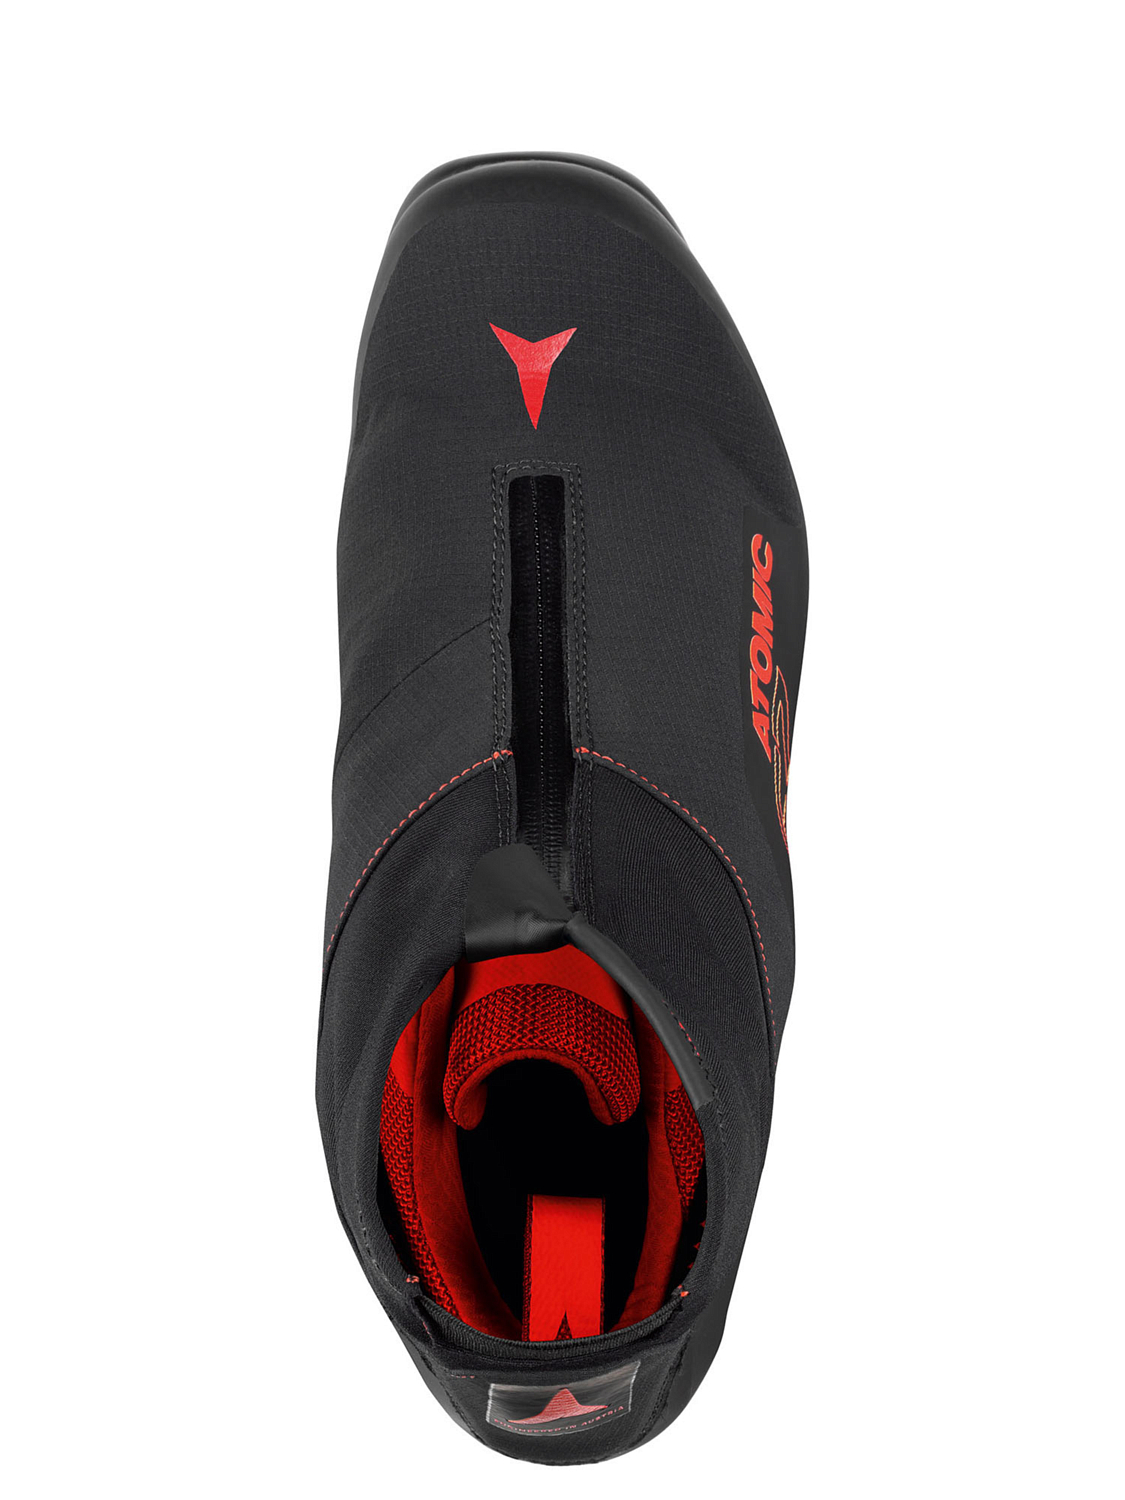 Лыжные ботинки ATOMIC Redster с7